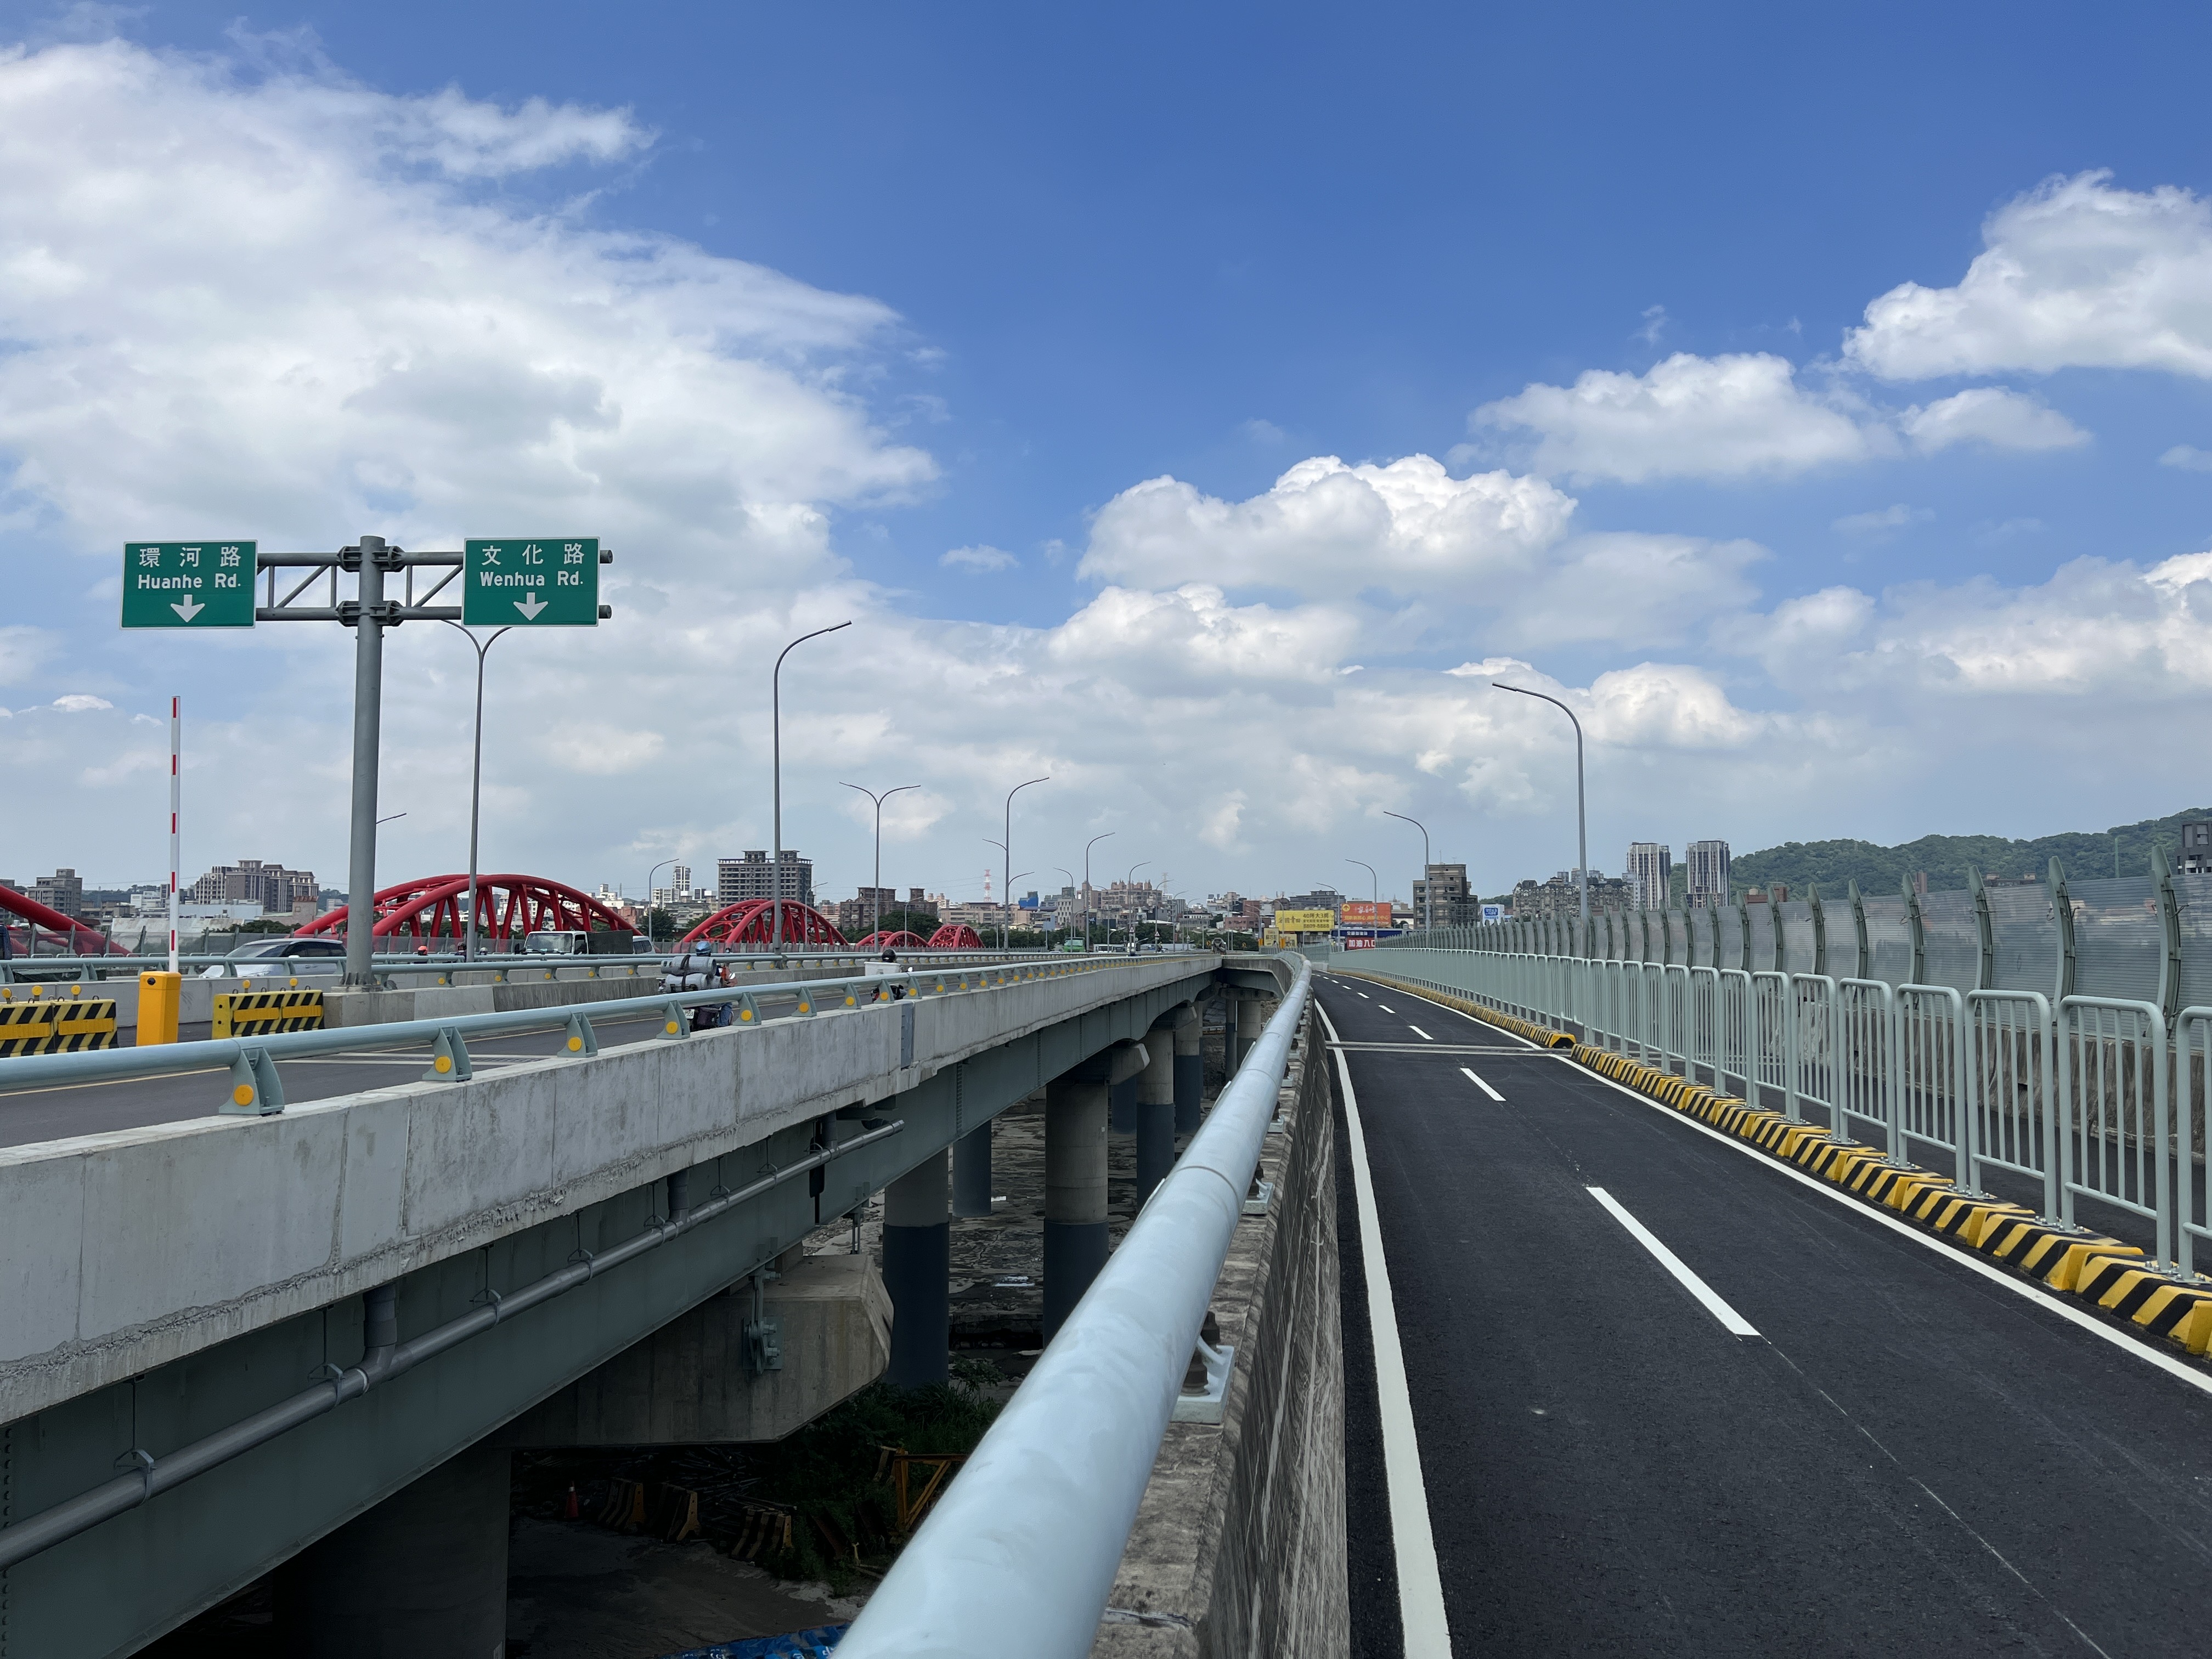 三鶯大橋改建工程已經完工，即將於9月23日開放全線通車，提供雙向各2個汽車道、兩側機車專用道及人行兼自行車道，為往返三鶯地區的民眾帶來安全便利的交通。